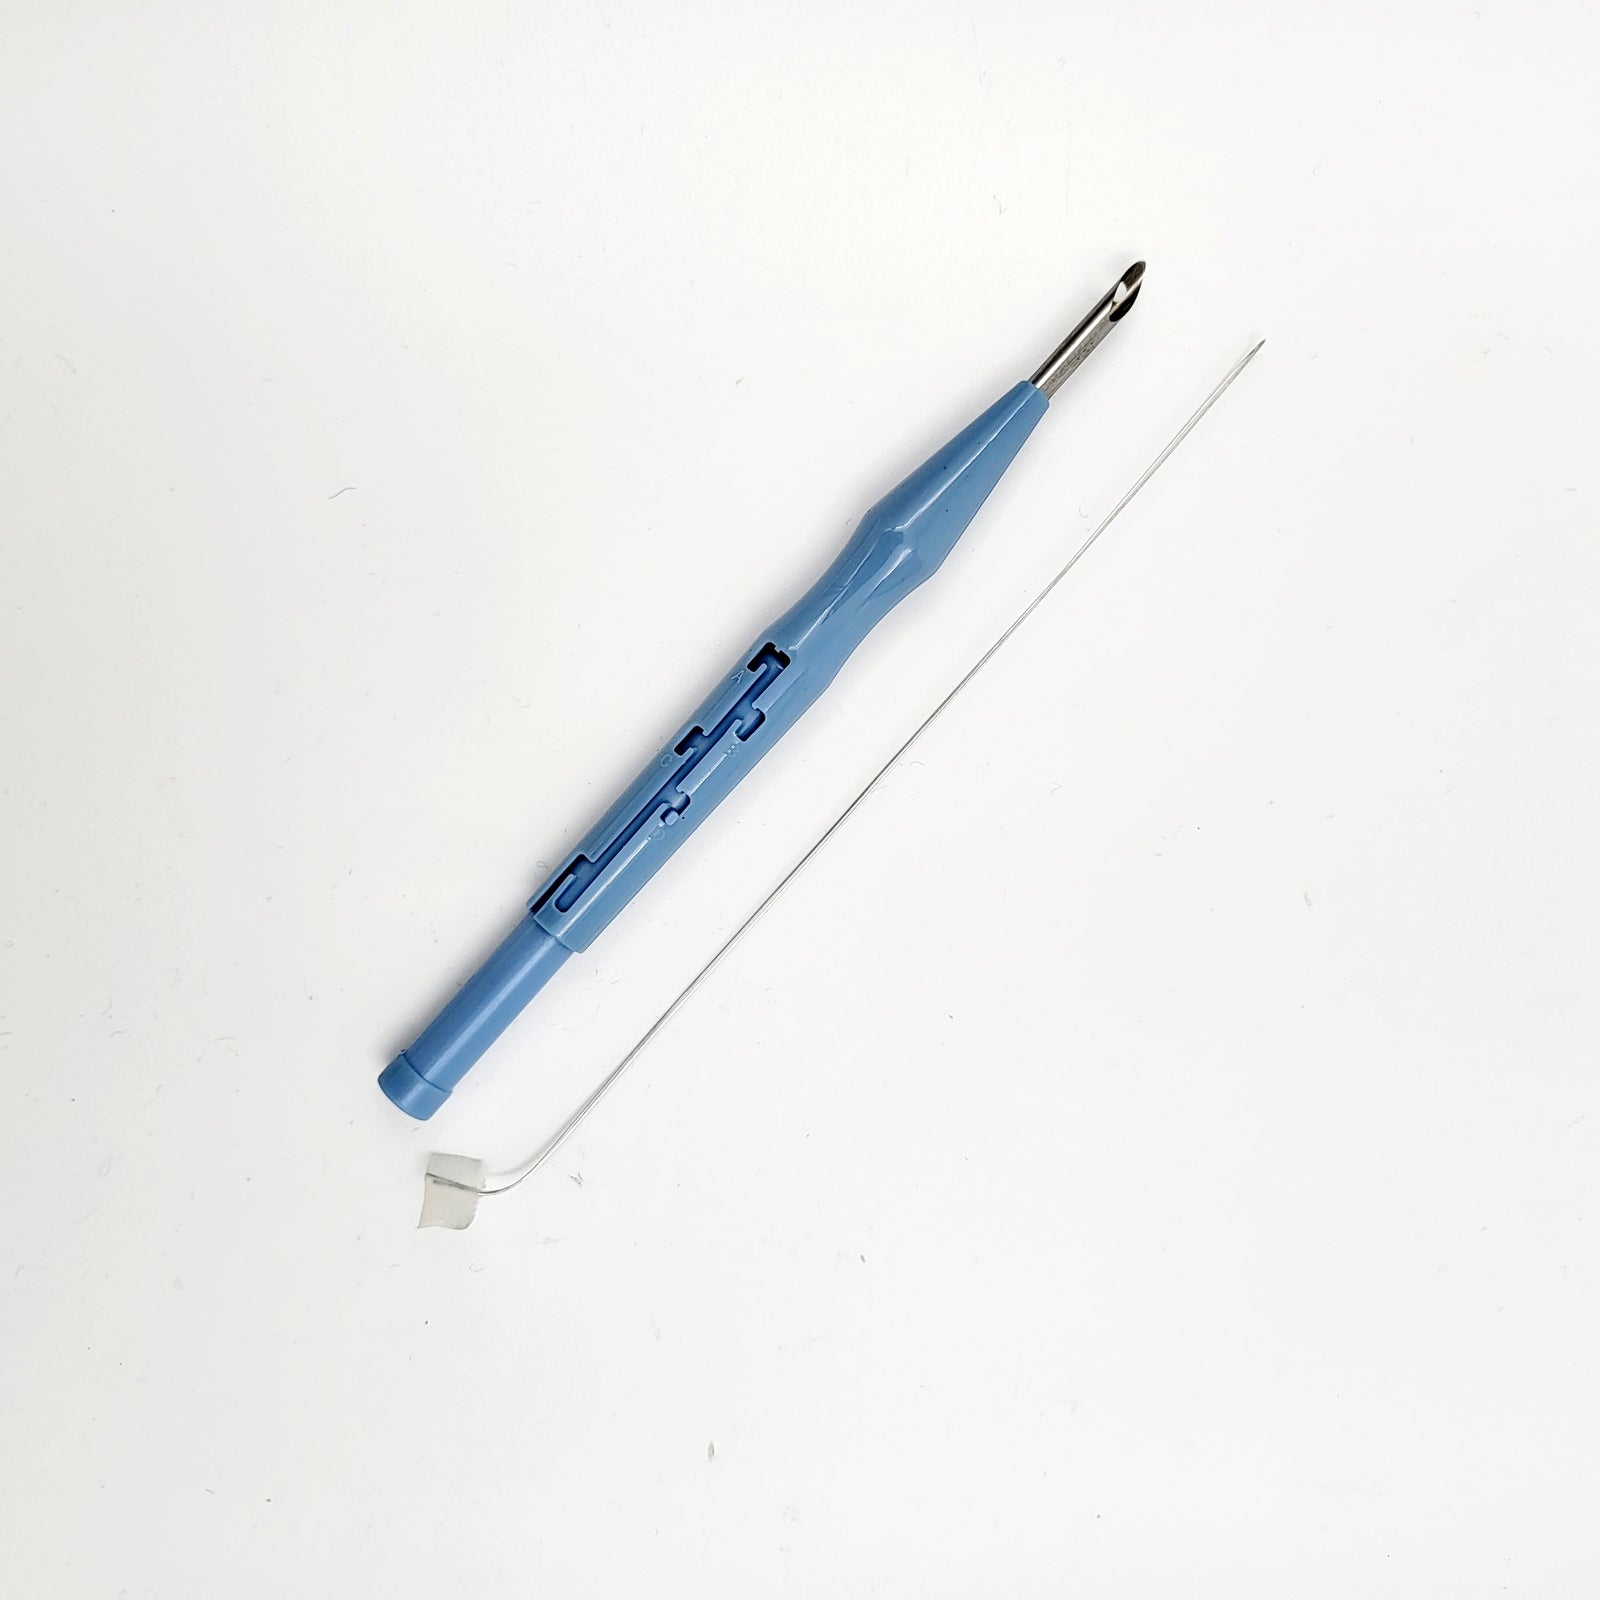  Lavor Punch Needle Supplies 10×6×2 4pcs Portable Punch